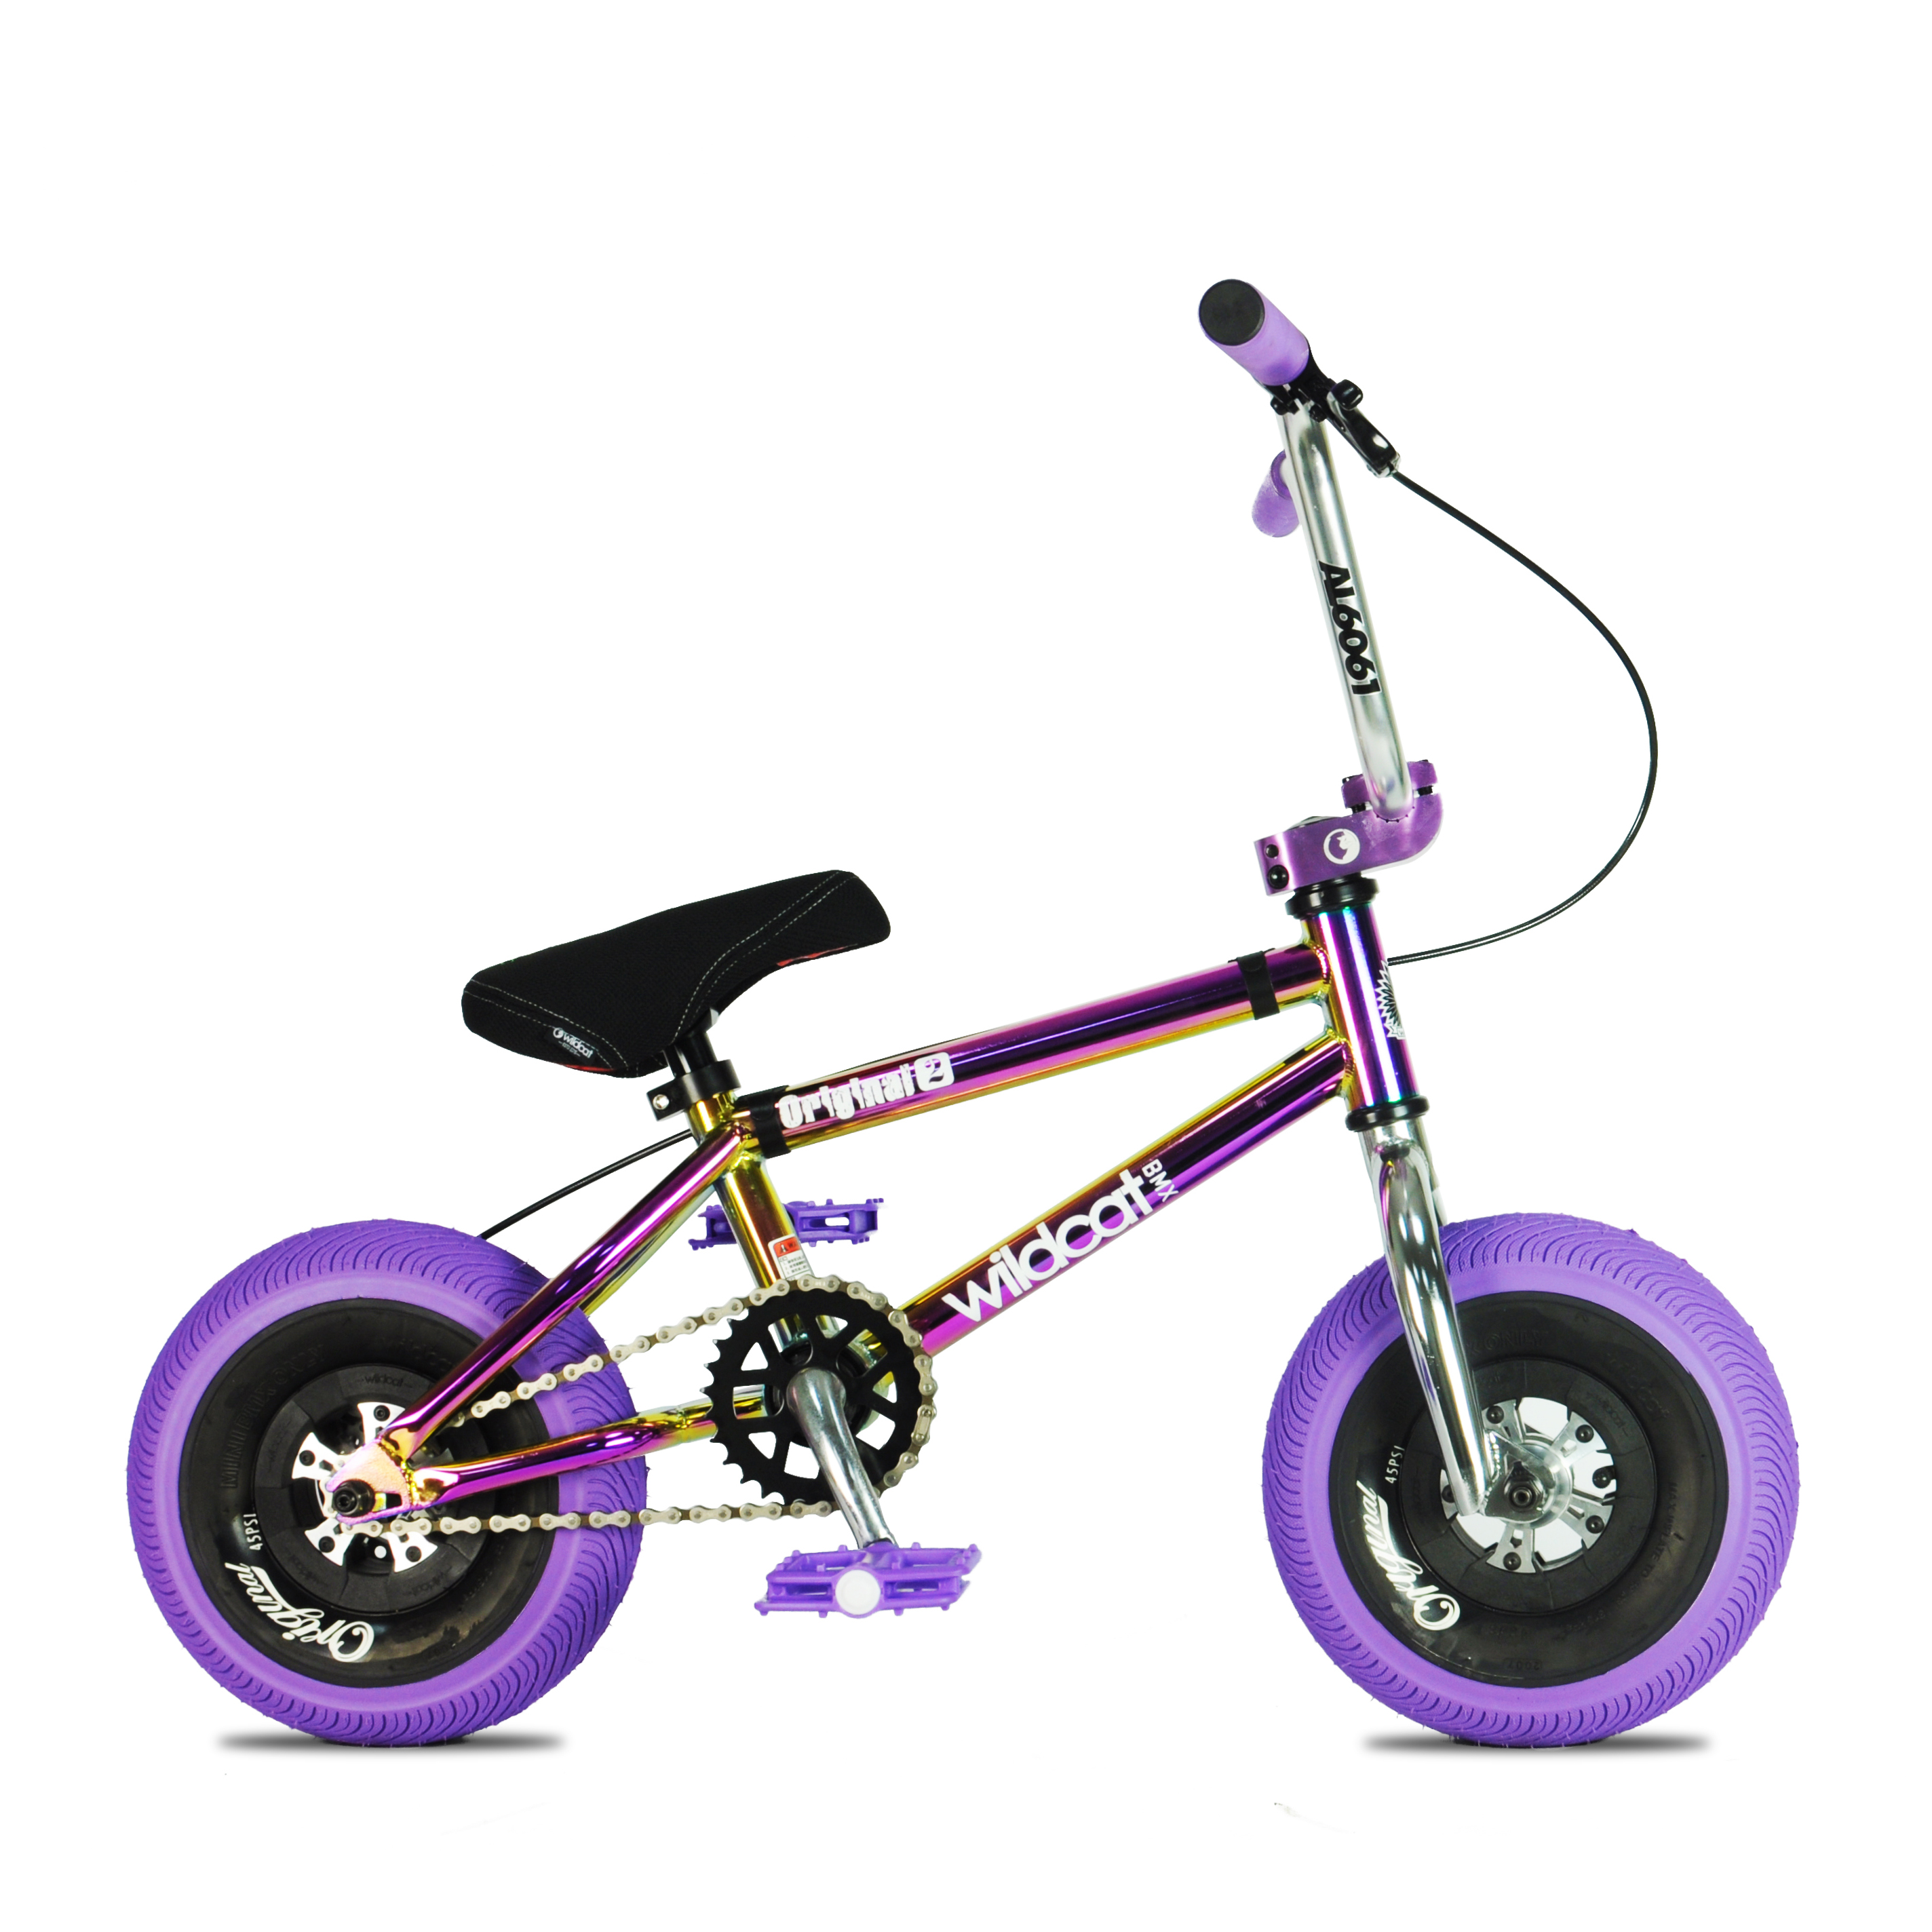 Иусрос мини фиолетовый. Айкрос мини фиолетовый. BMX детский мир экстрим. Защита детская для BMX Race.